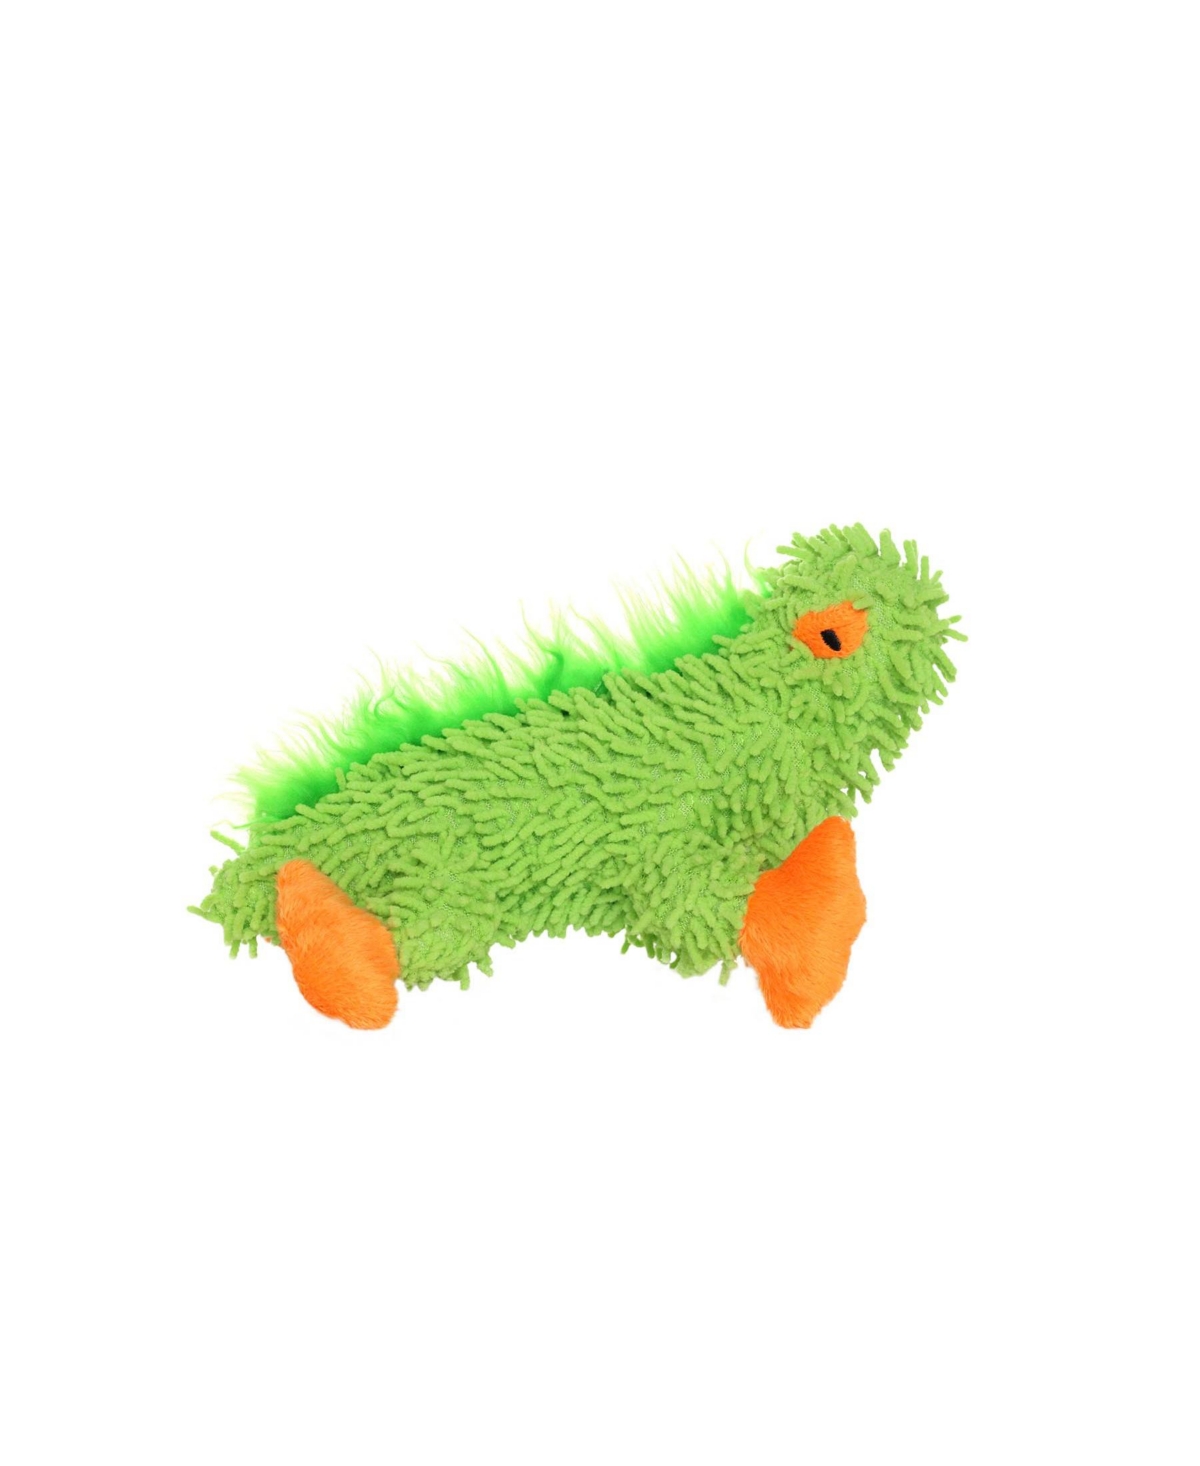 Jr Micro Fiber Lizard, Dog Toy - Green